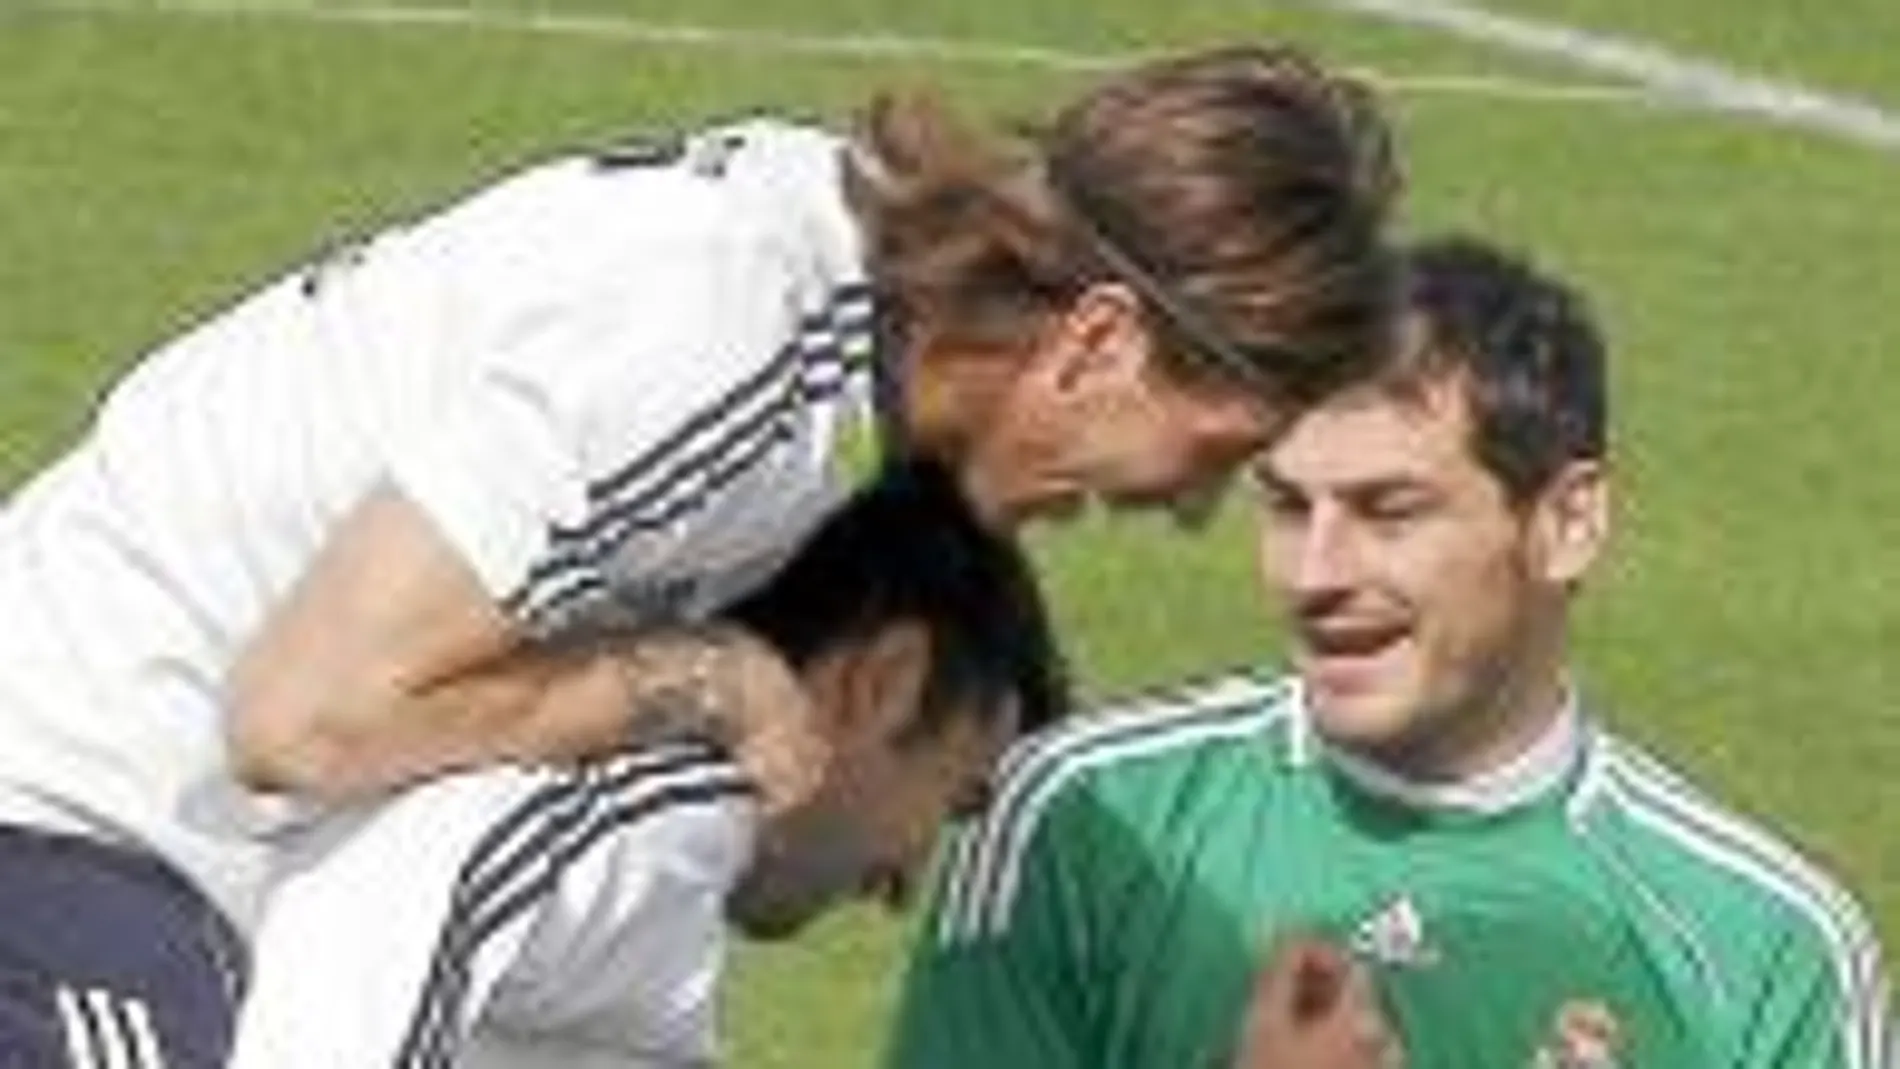 HIGUAÍN, Ramos y Casillas, distendidos durante un entrenamiento